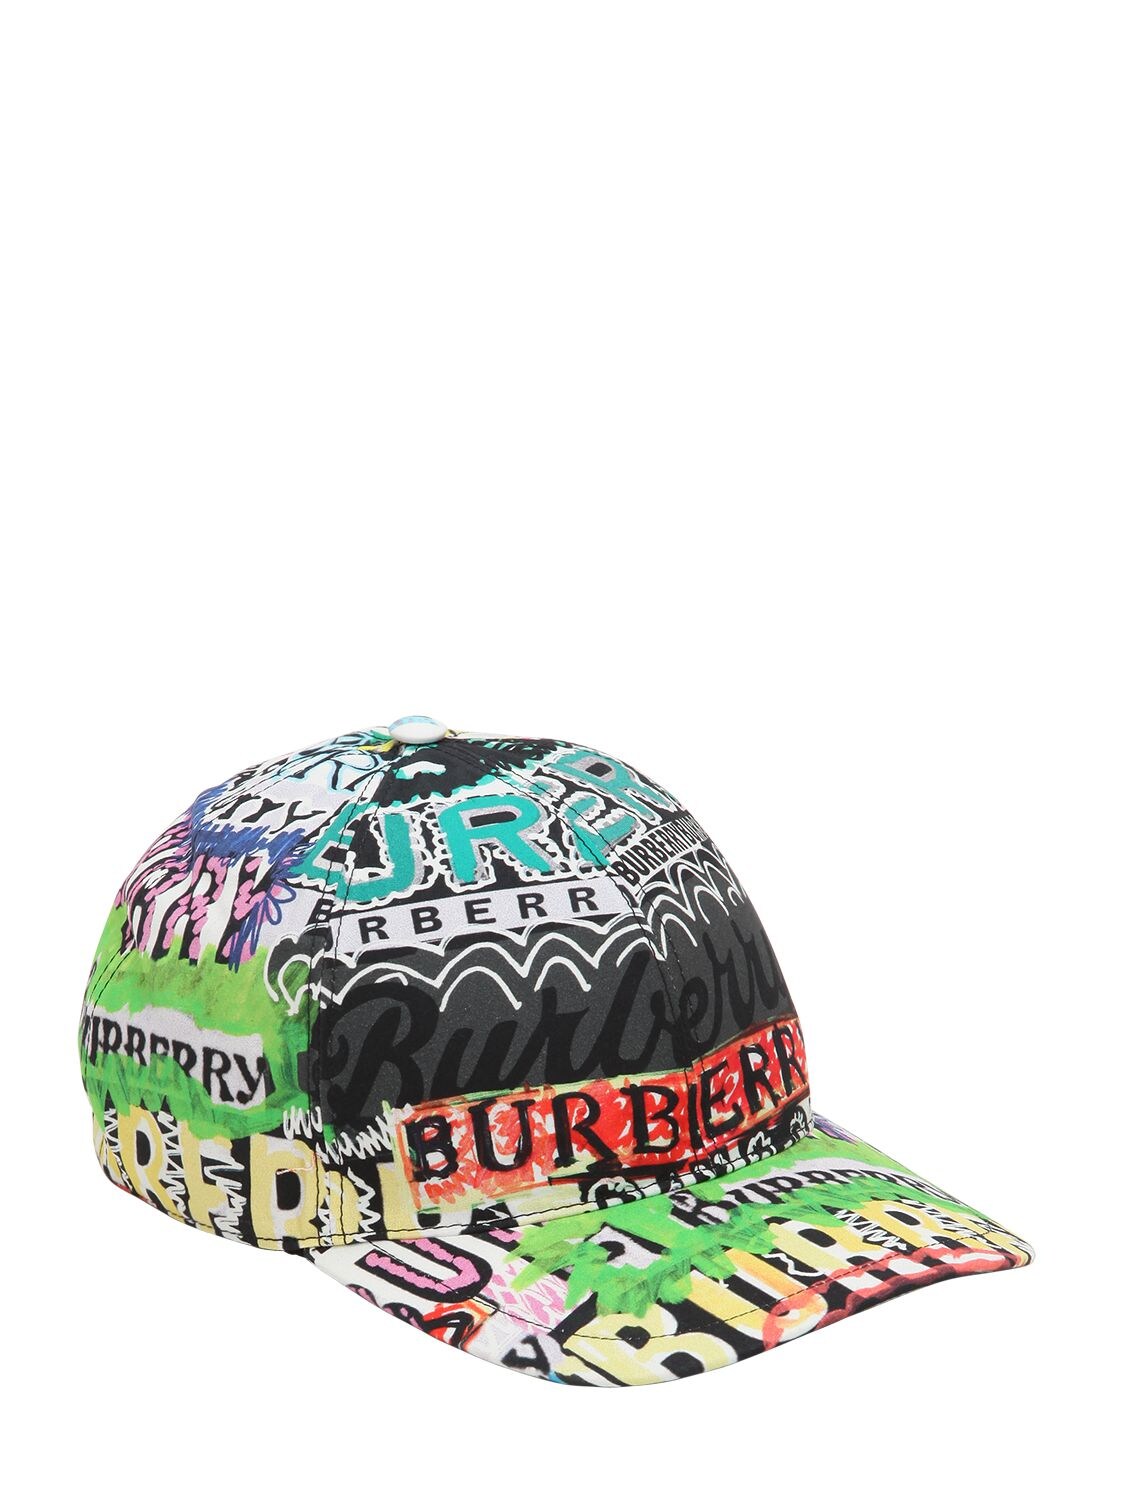 BURBERRY GRAFFITI CHECK COTTON BASEBALL HAT,68ID1H050-OTYxMFA1